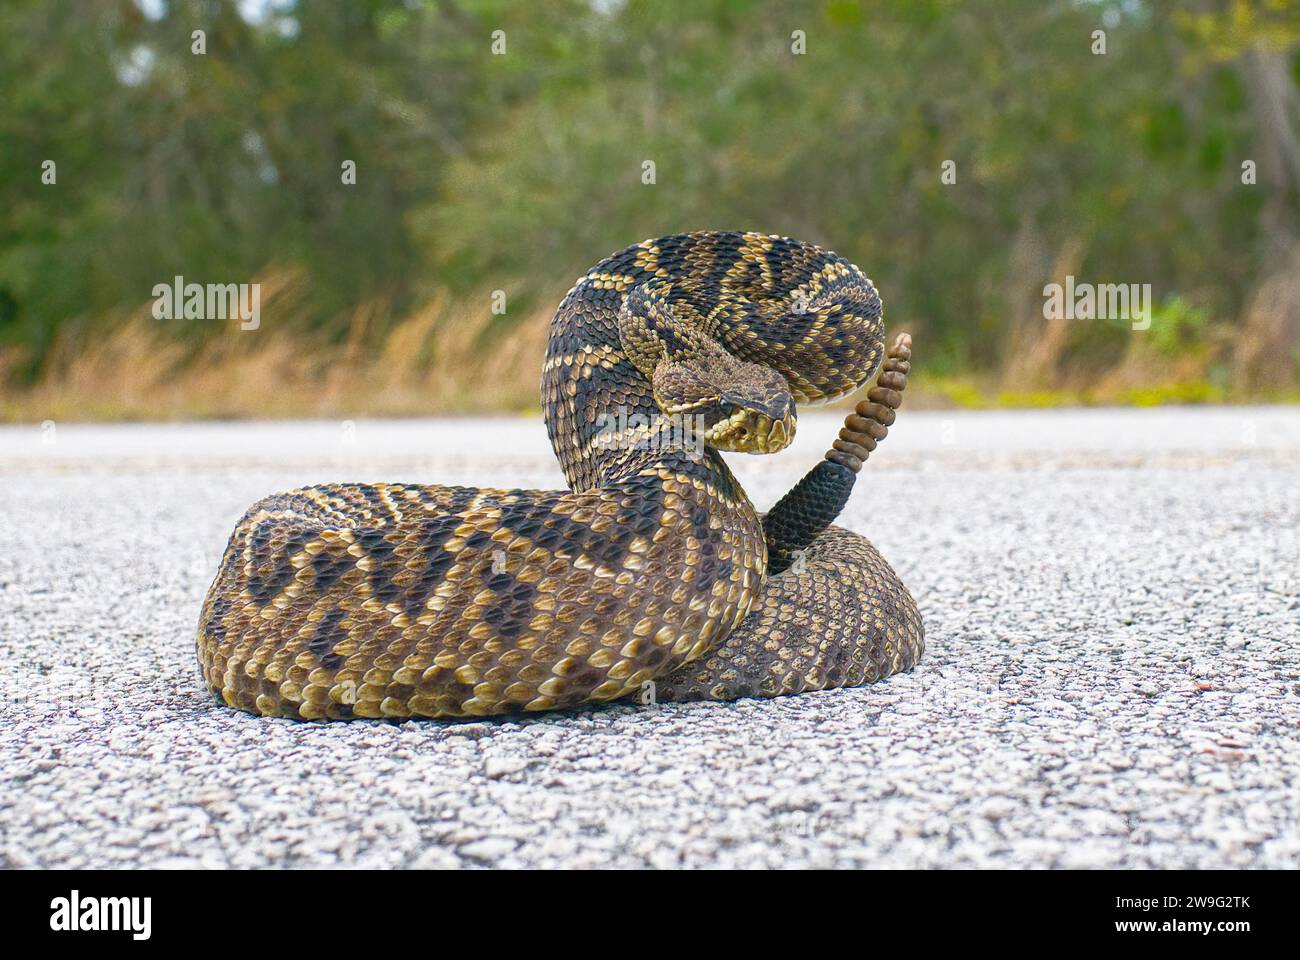 Il re di tutti i serpenti a sonagli del mondo, Crotalus Adamanteus, il rattler del Diamondback orientale, in posa sciopero di fronte alla fotocamera. 9 battiti e un pulsante Foto Stock